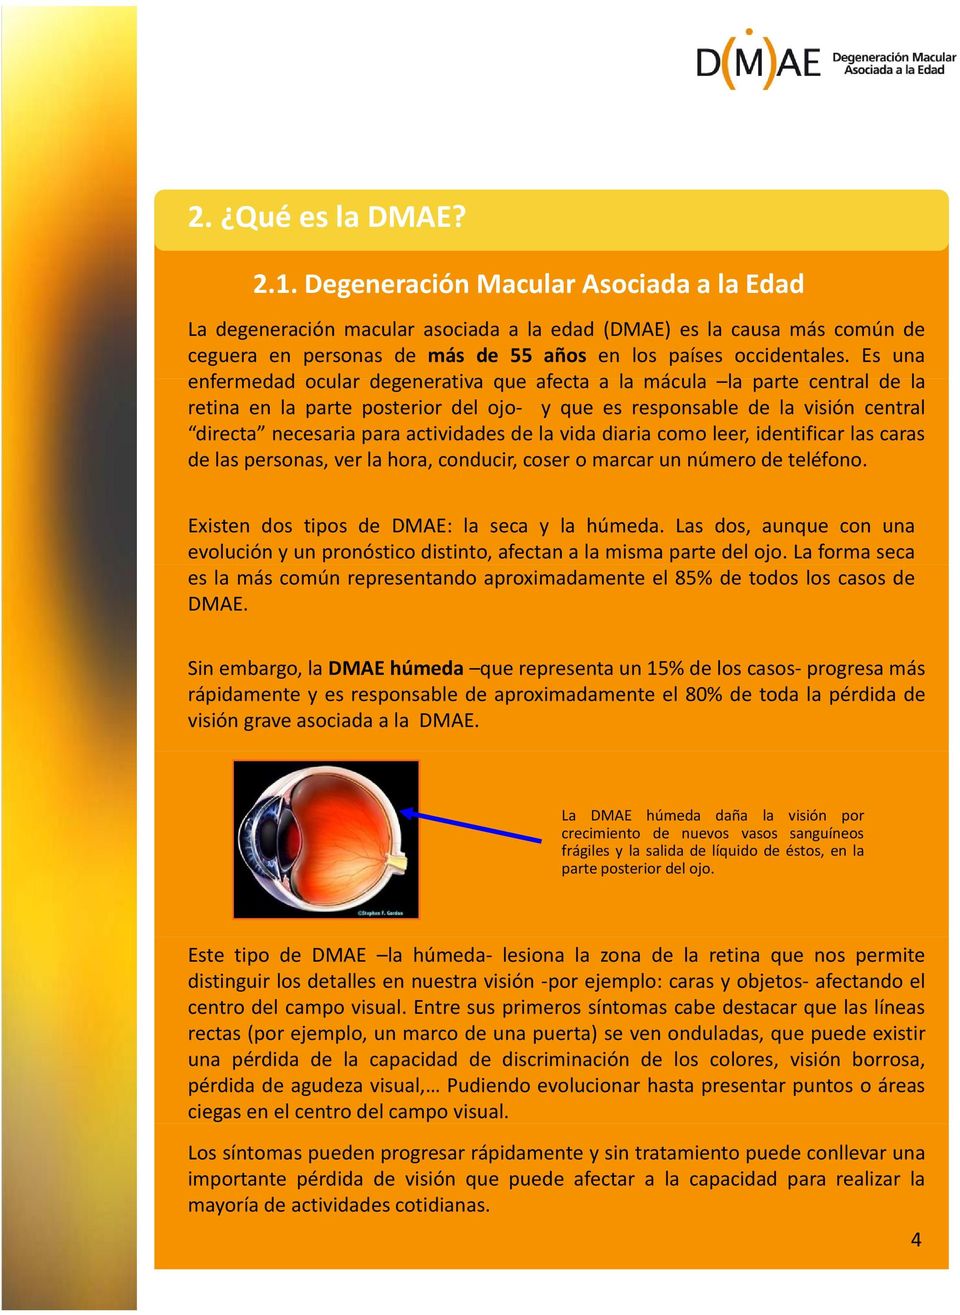 Es una enfermedad ocular degenerativa que afecta a la mácula la parte central de la retina en la parte posterior del ojo yqueesresponsabledelavisióncentral directa necesaria para actividades de la